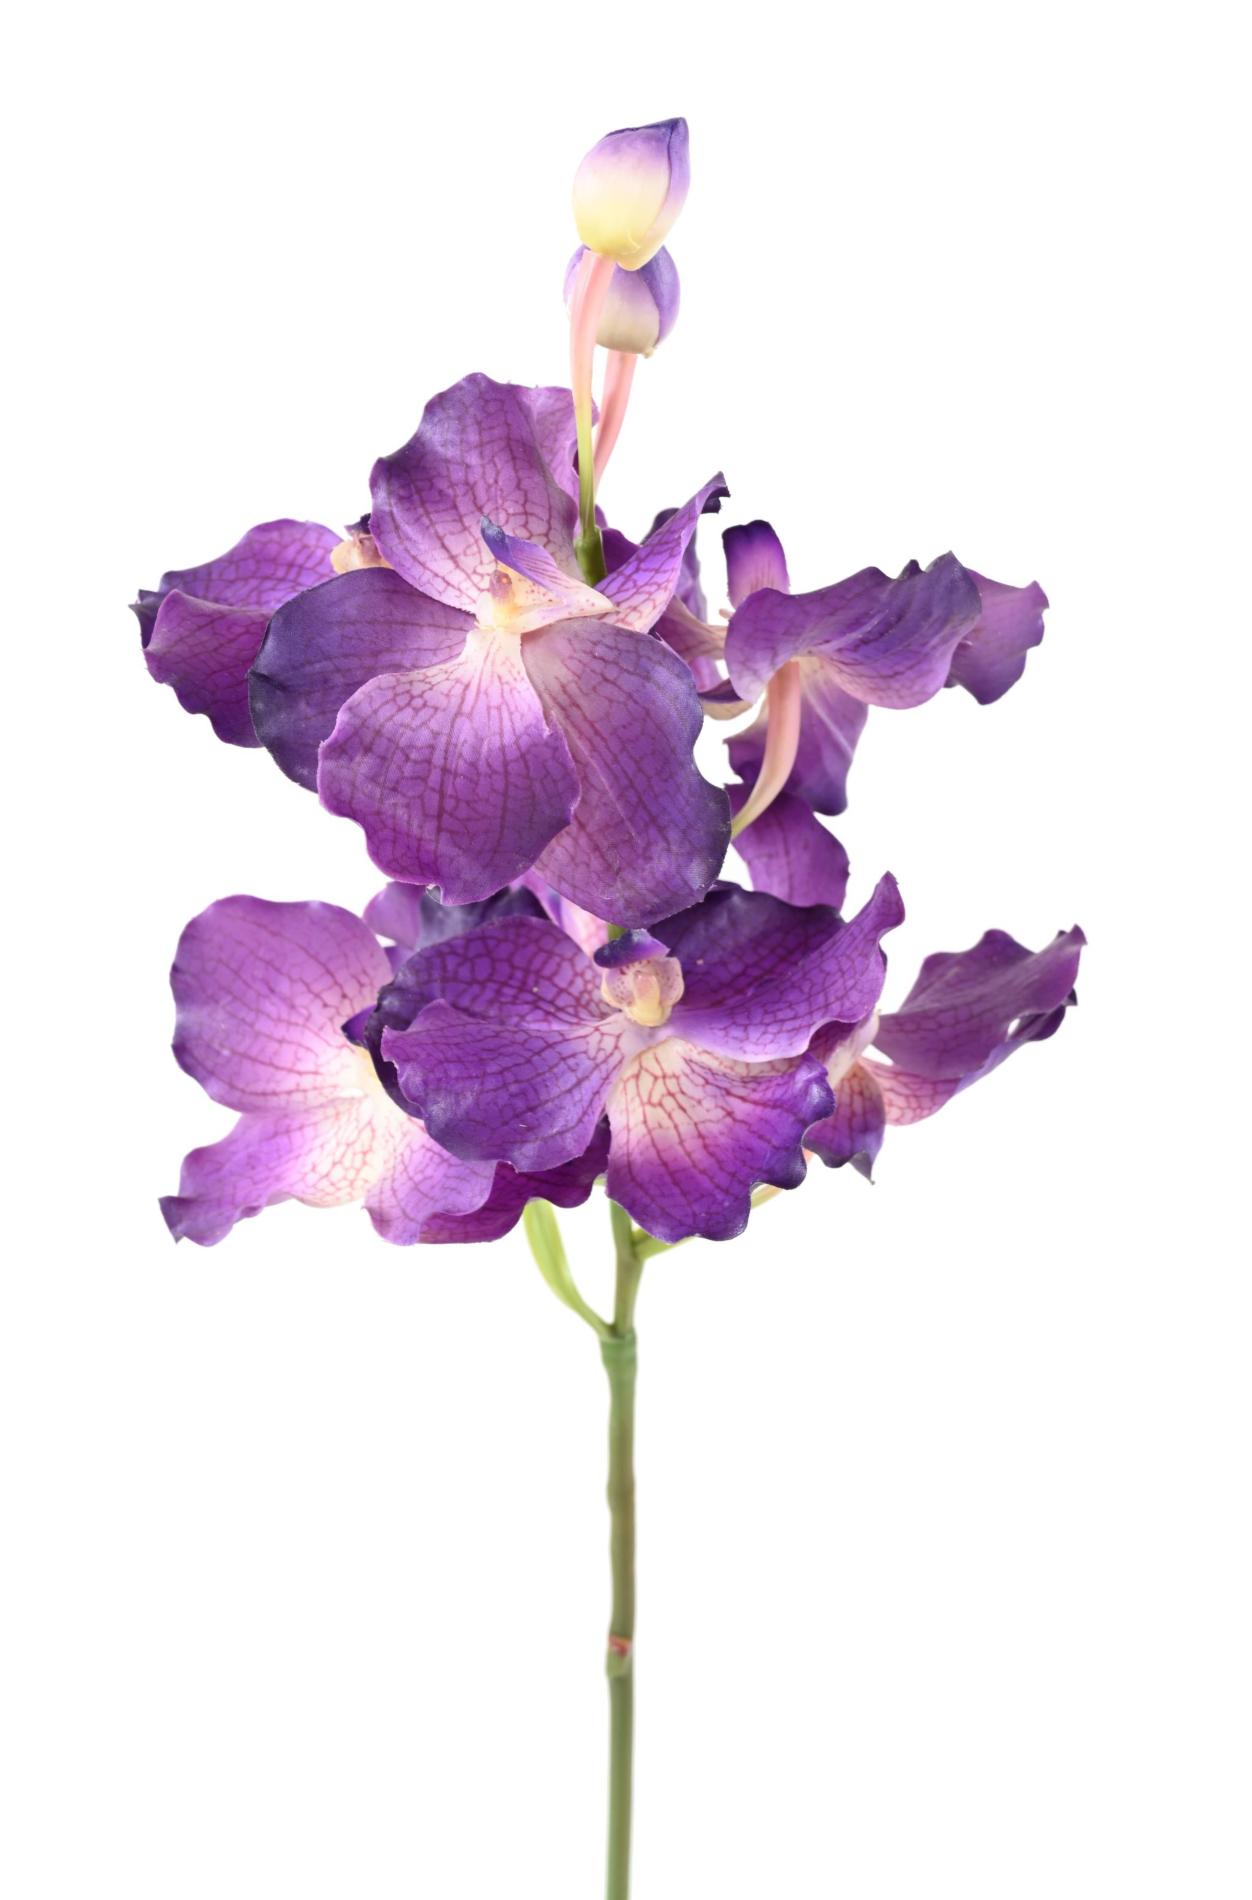 Entretien des orchidées - Gamm vert